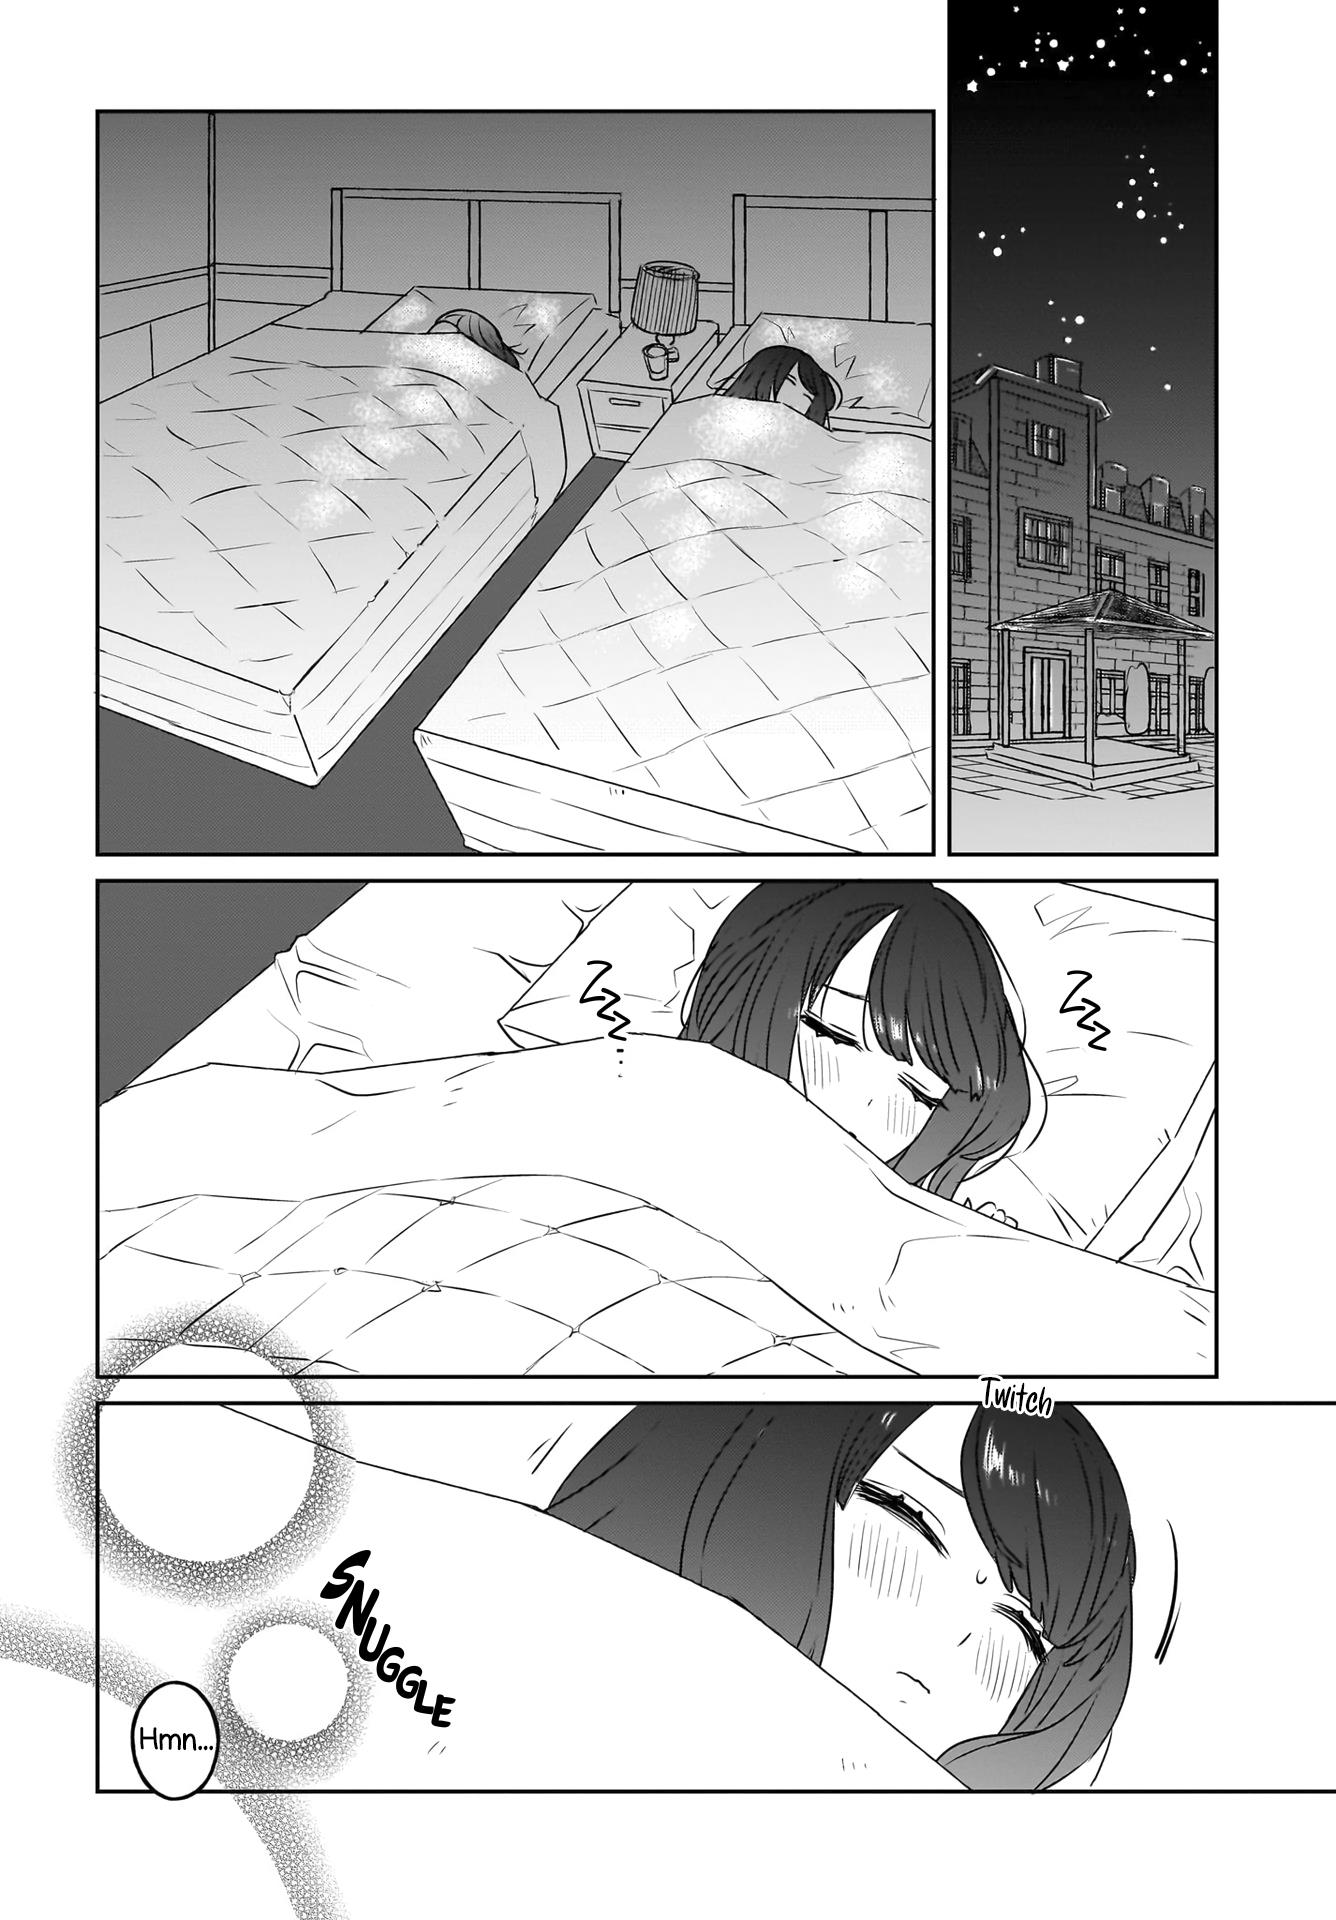 Sensory Sharing Maid-San! - Page 2